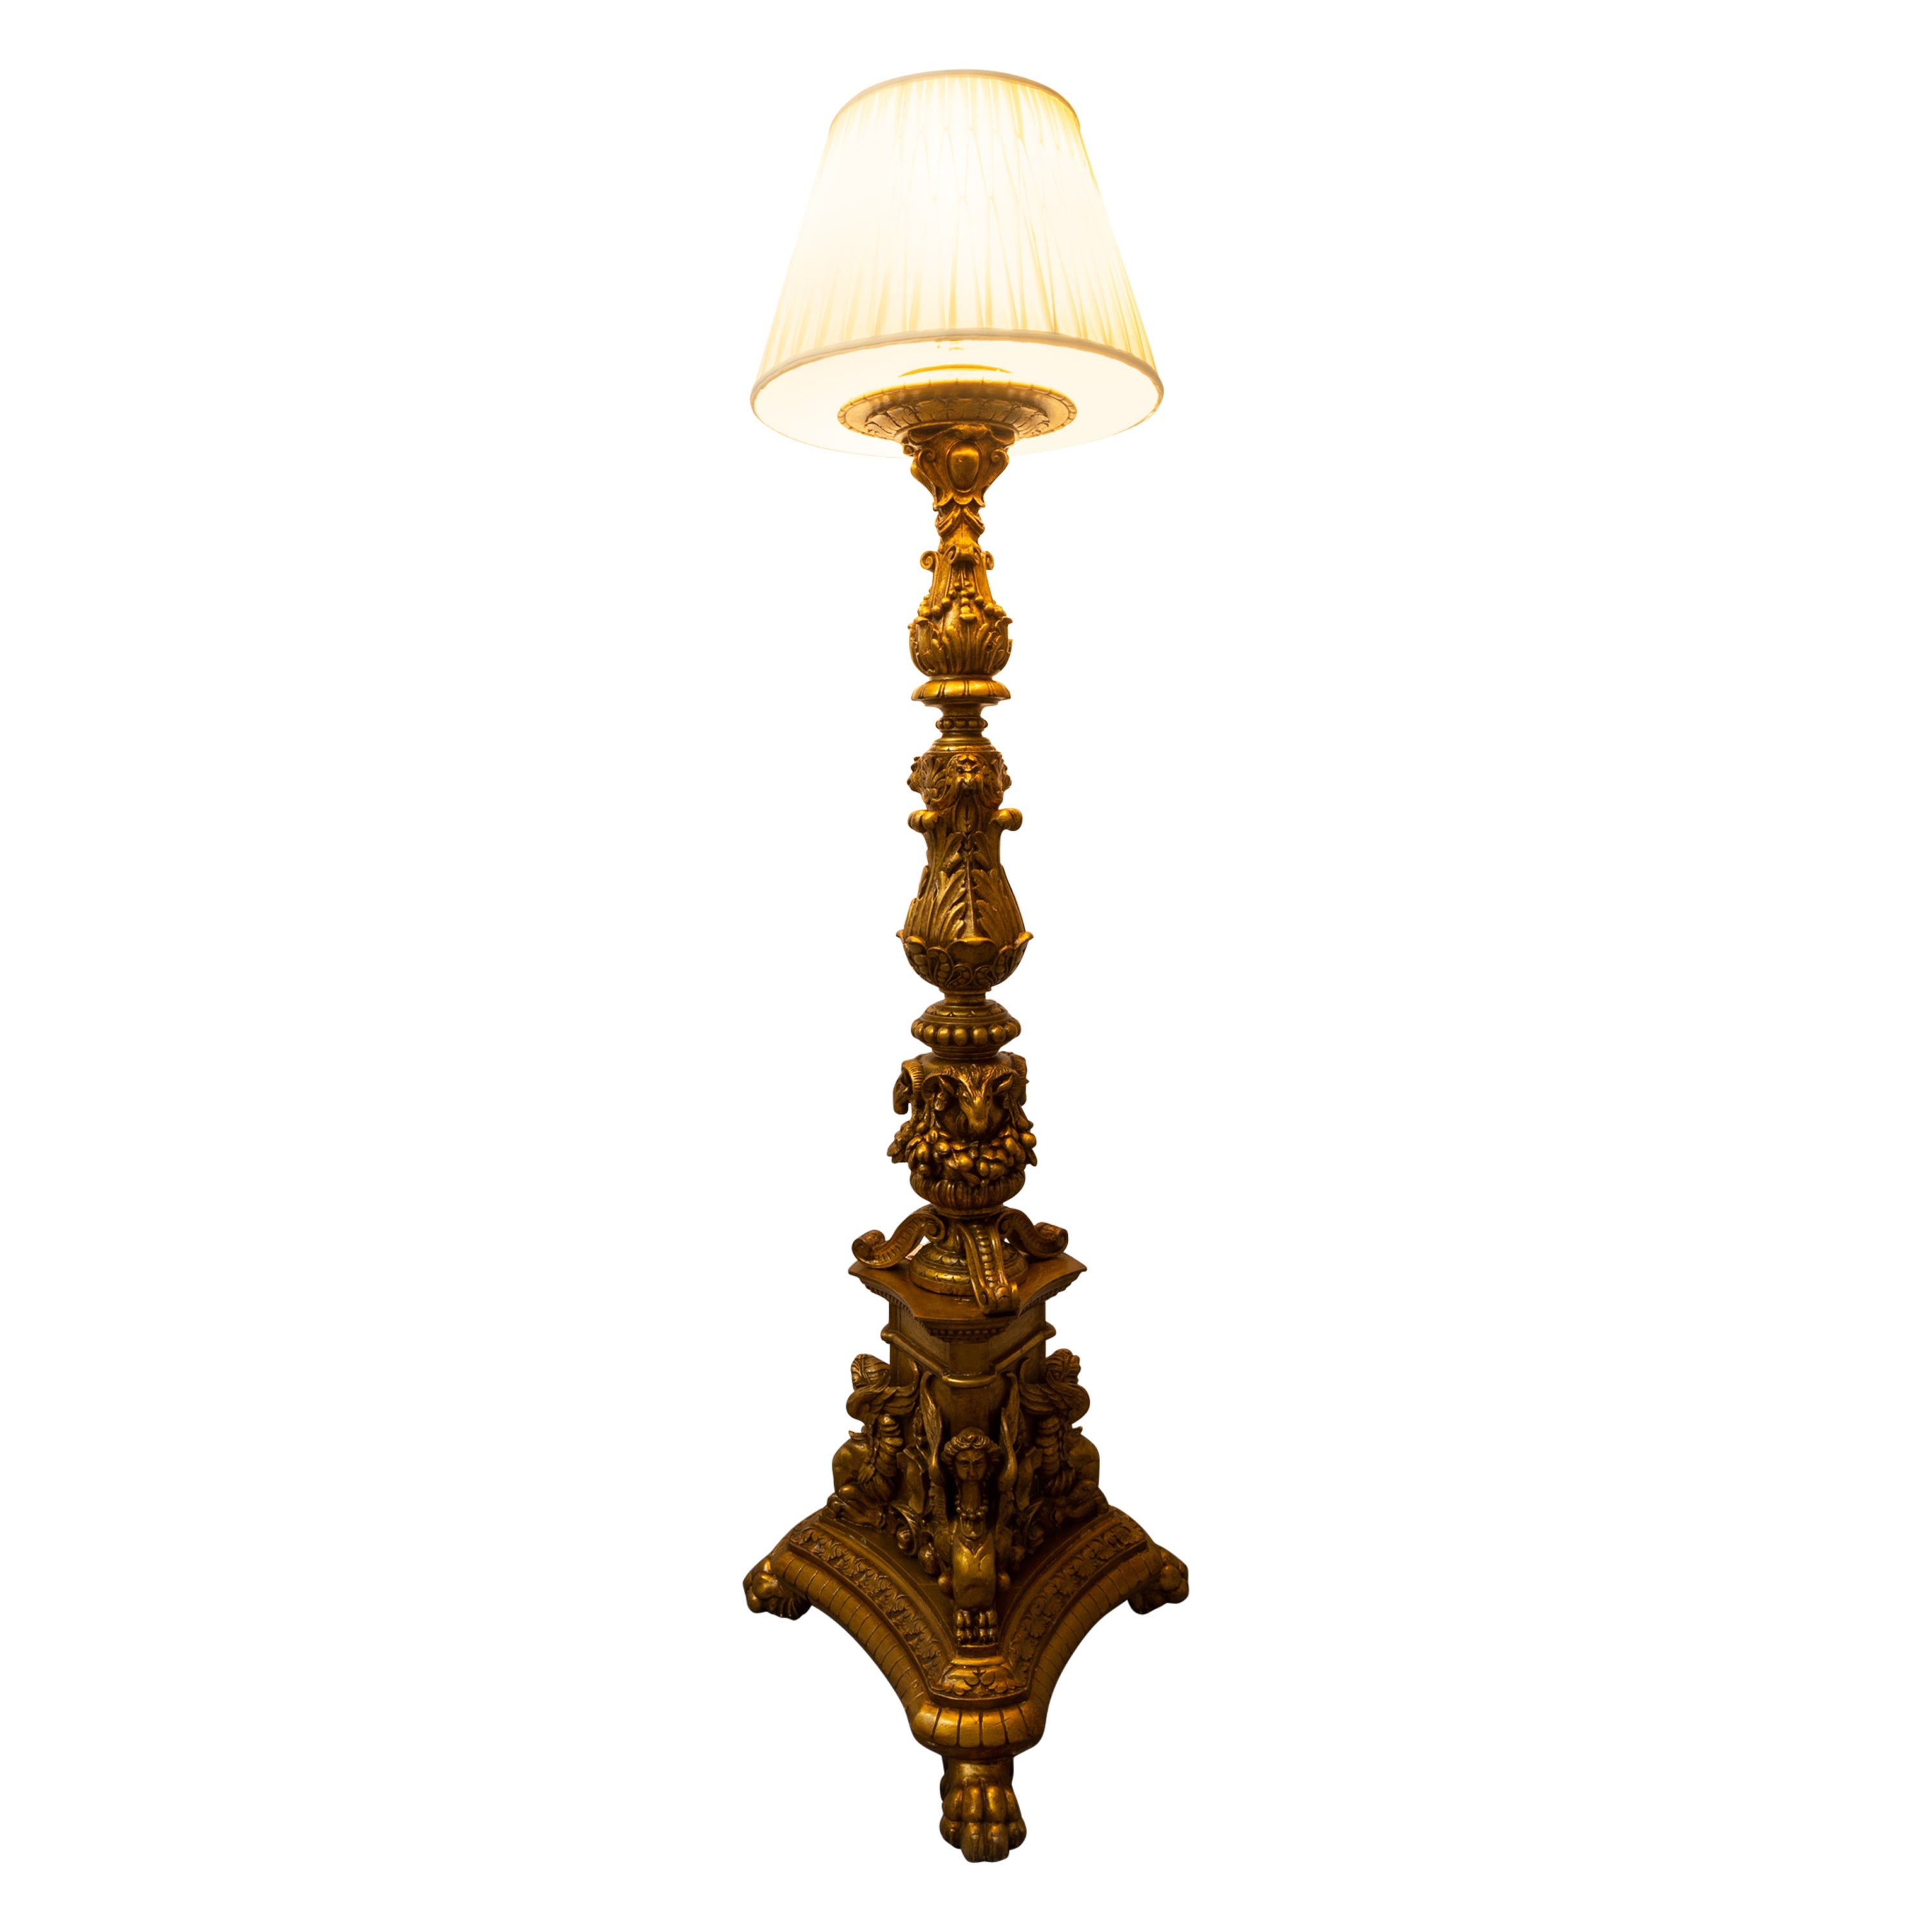 Monumentale französische vergoldete Stehlampe aus dem 19. Jahrhundert, gut geschnitzt